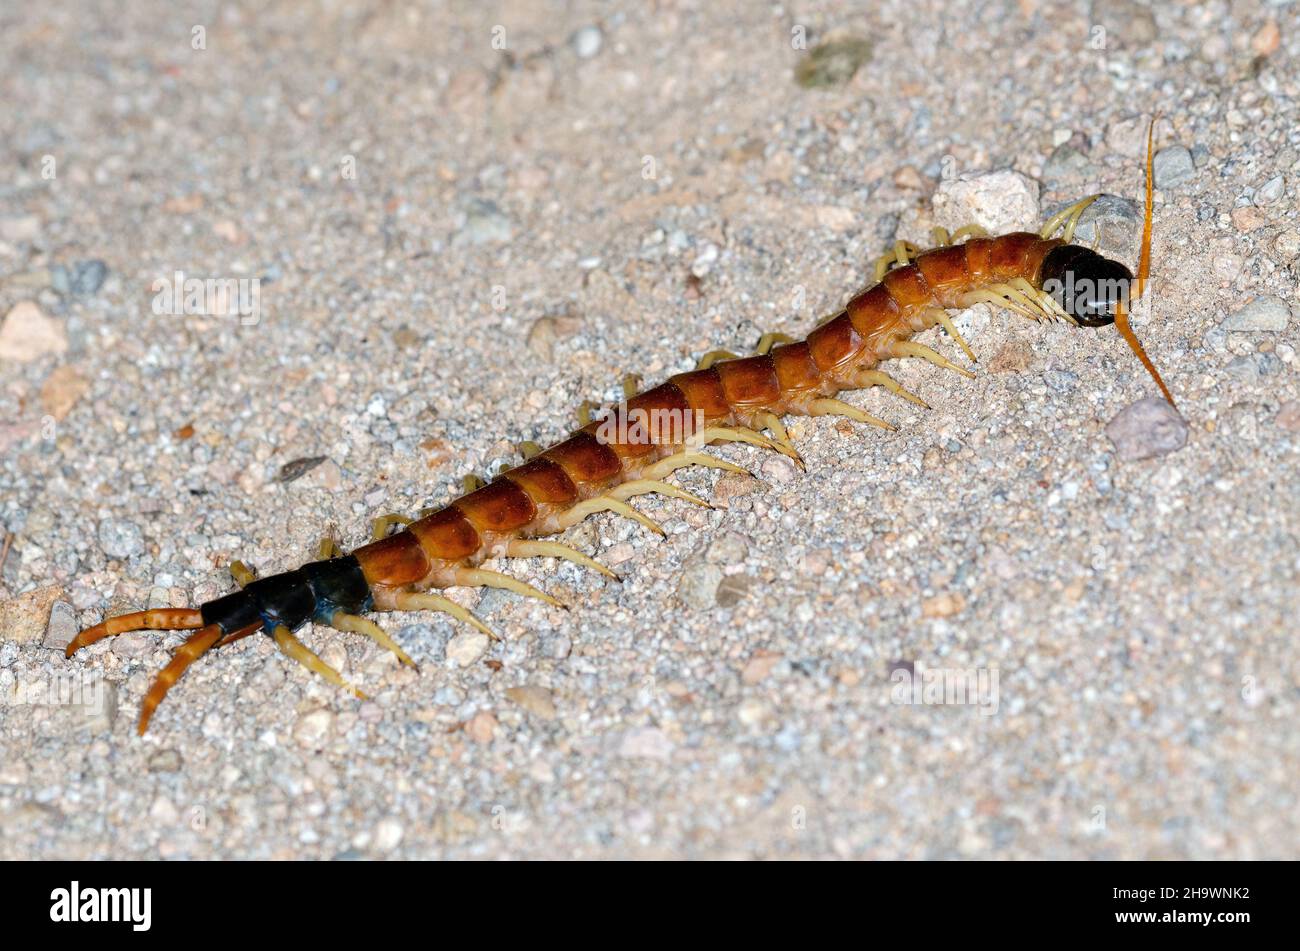 Giant Desert Centipede (Scolopendra heros) Stock Photo